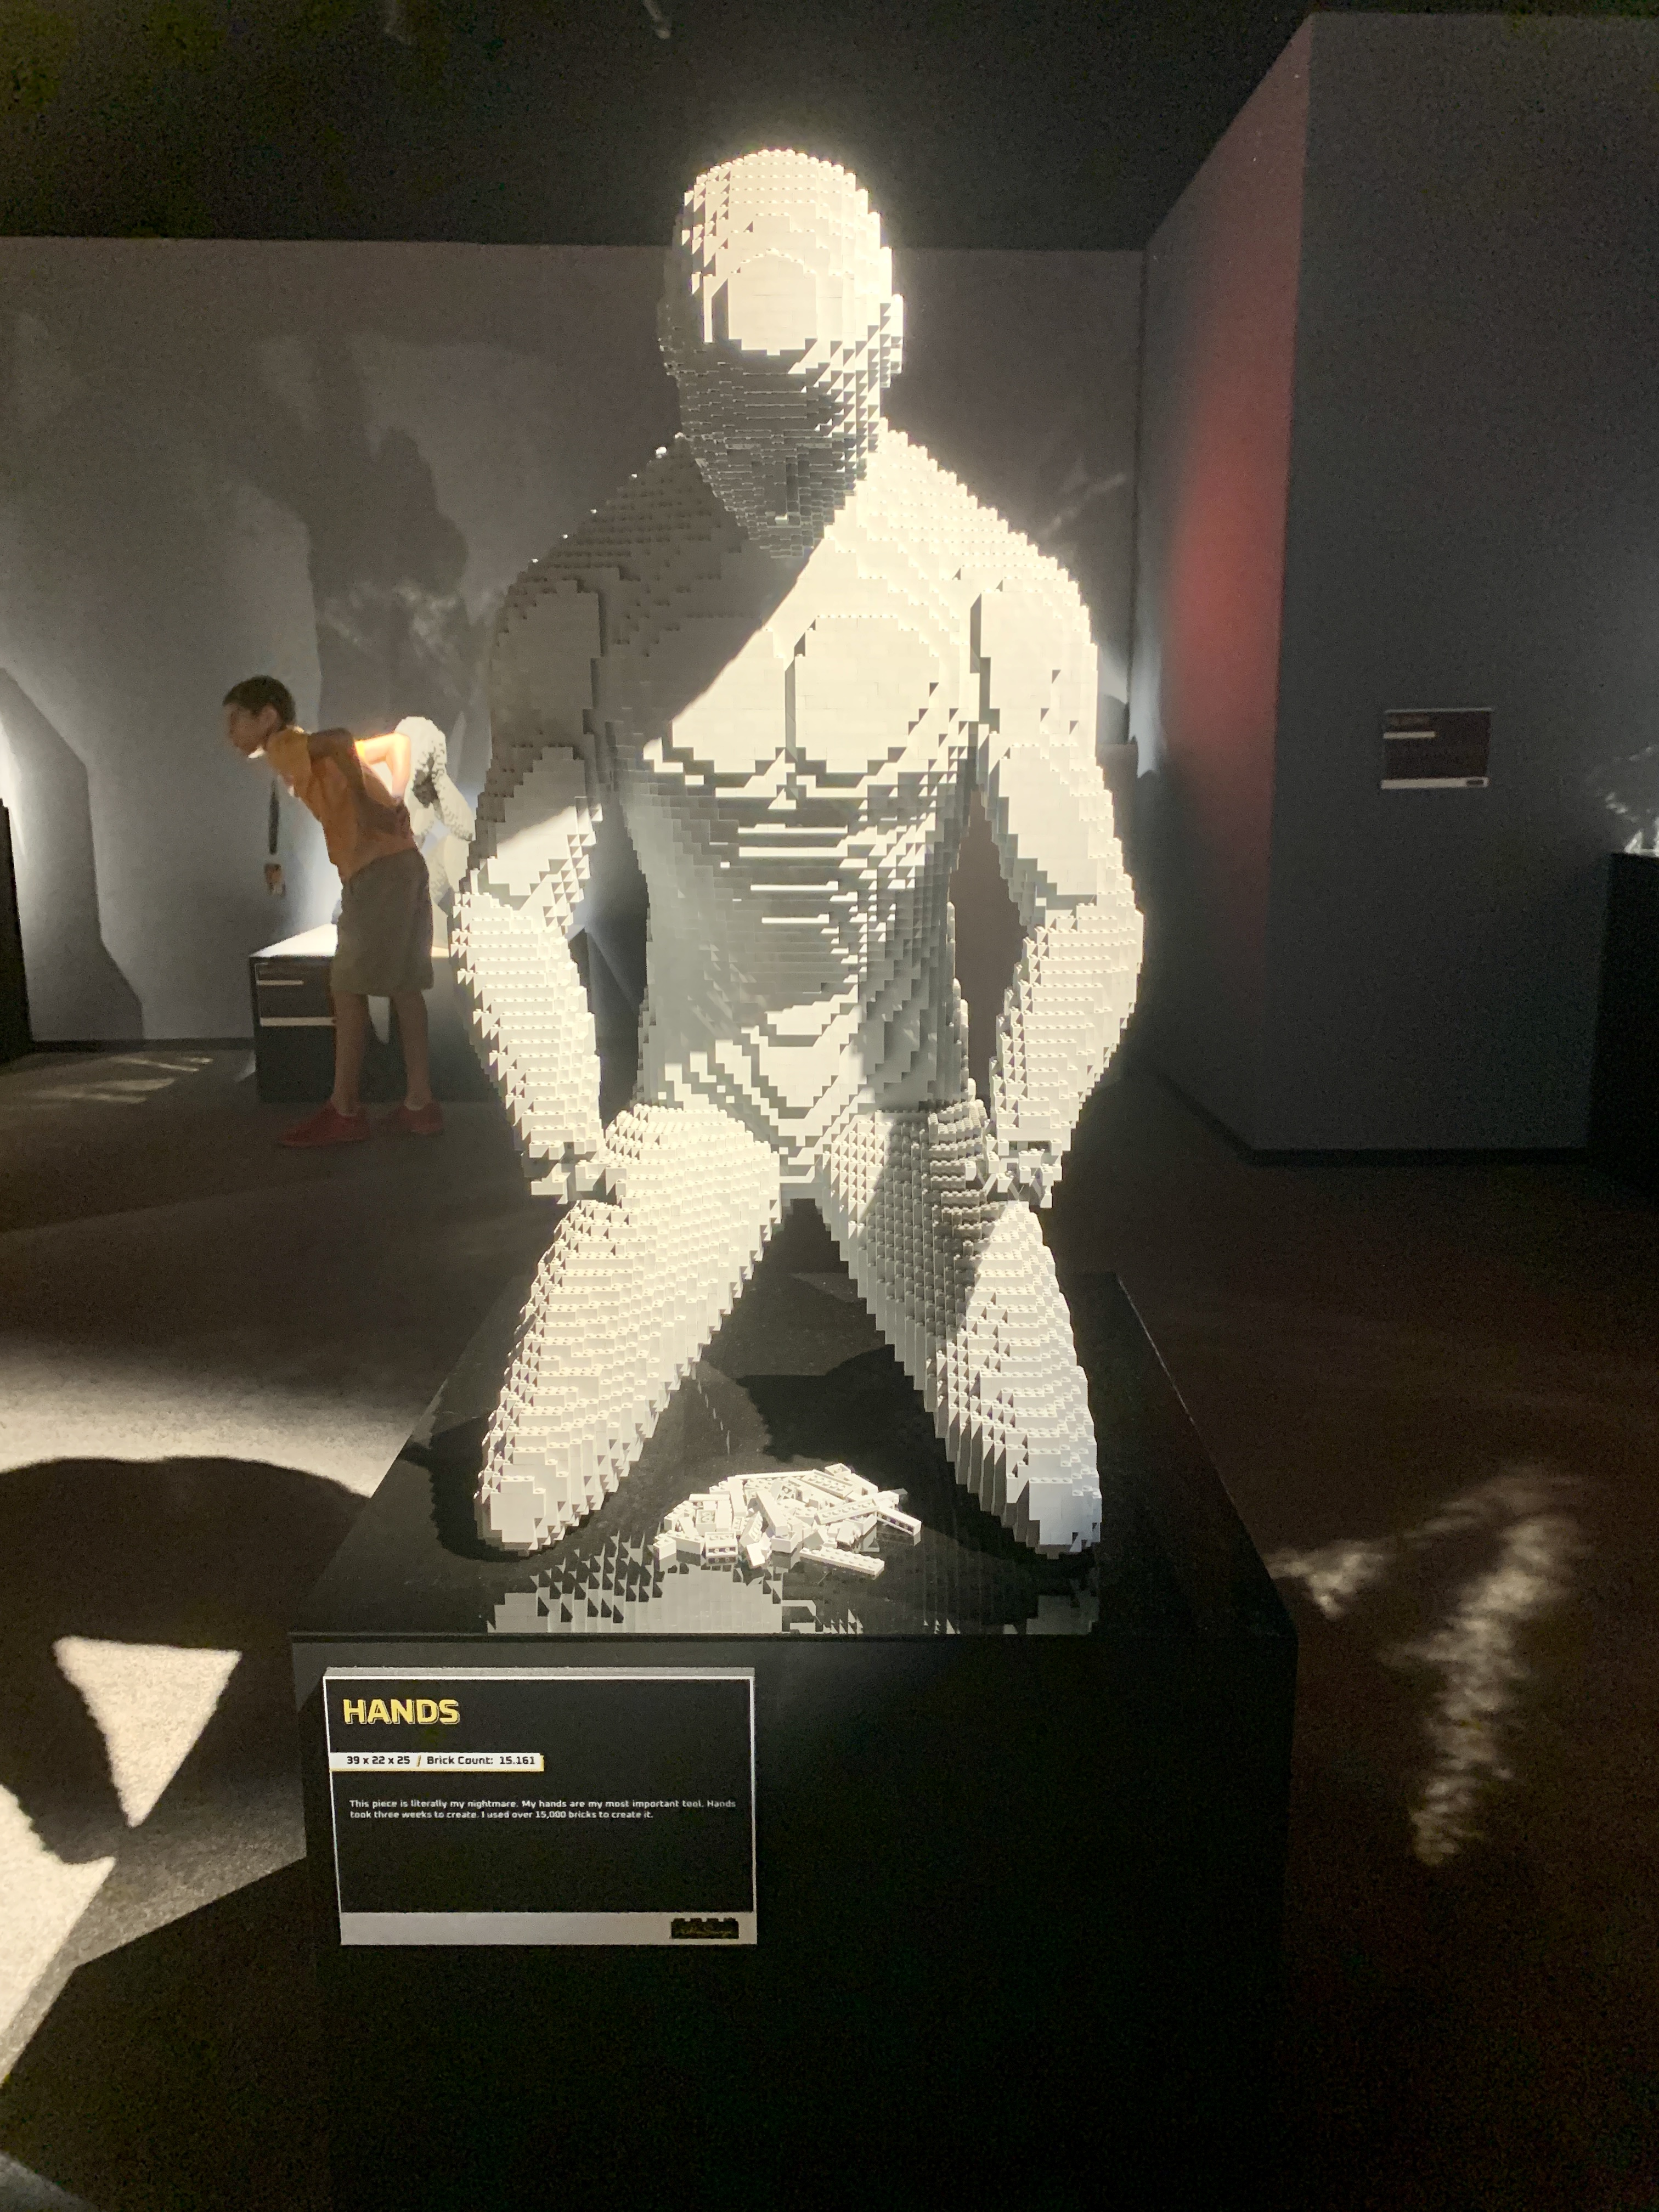 Lego Exhibit